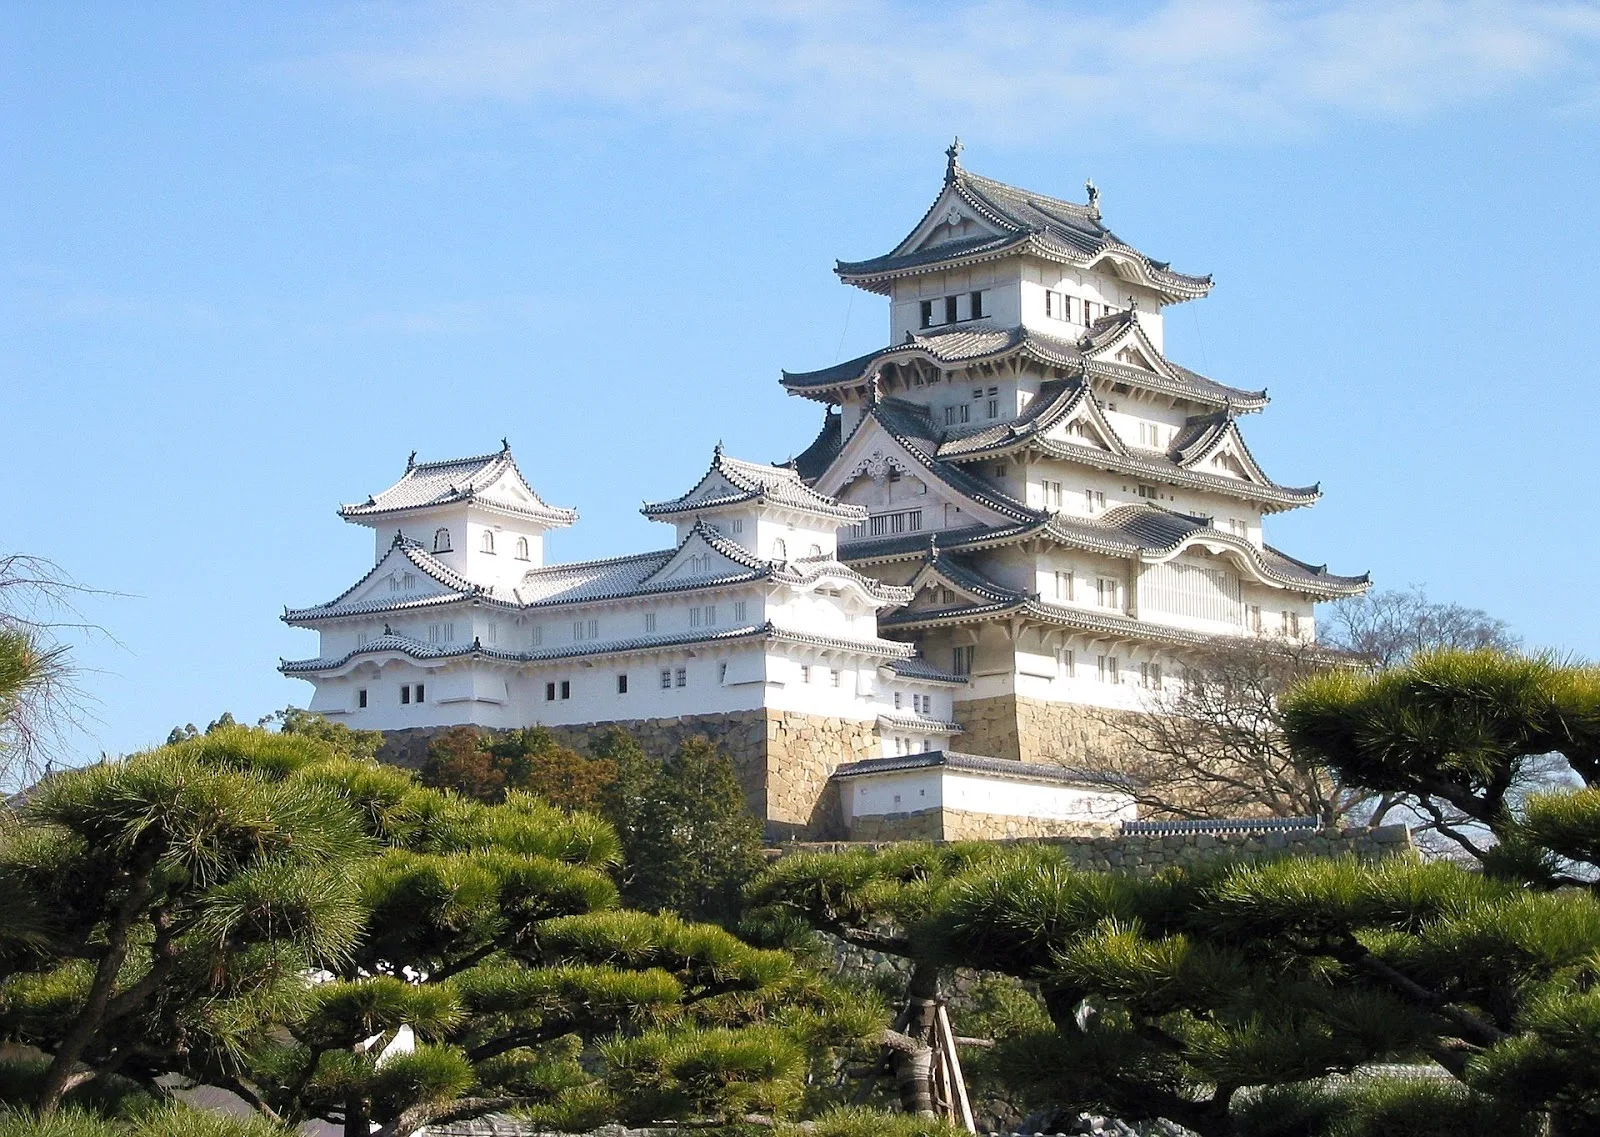 神戶-神戶景點-推薦-姬路城-Himeji Castle-自由行-旅遊-觀光-神戶必遊景點-神戶必去景點-神戶必玩景點-神戶一日遊-半日遊-神戶行程-神戶市區景點-神戶好玩景點-日本-kobe-tourist-attraction-travel